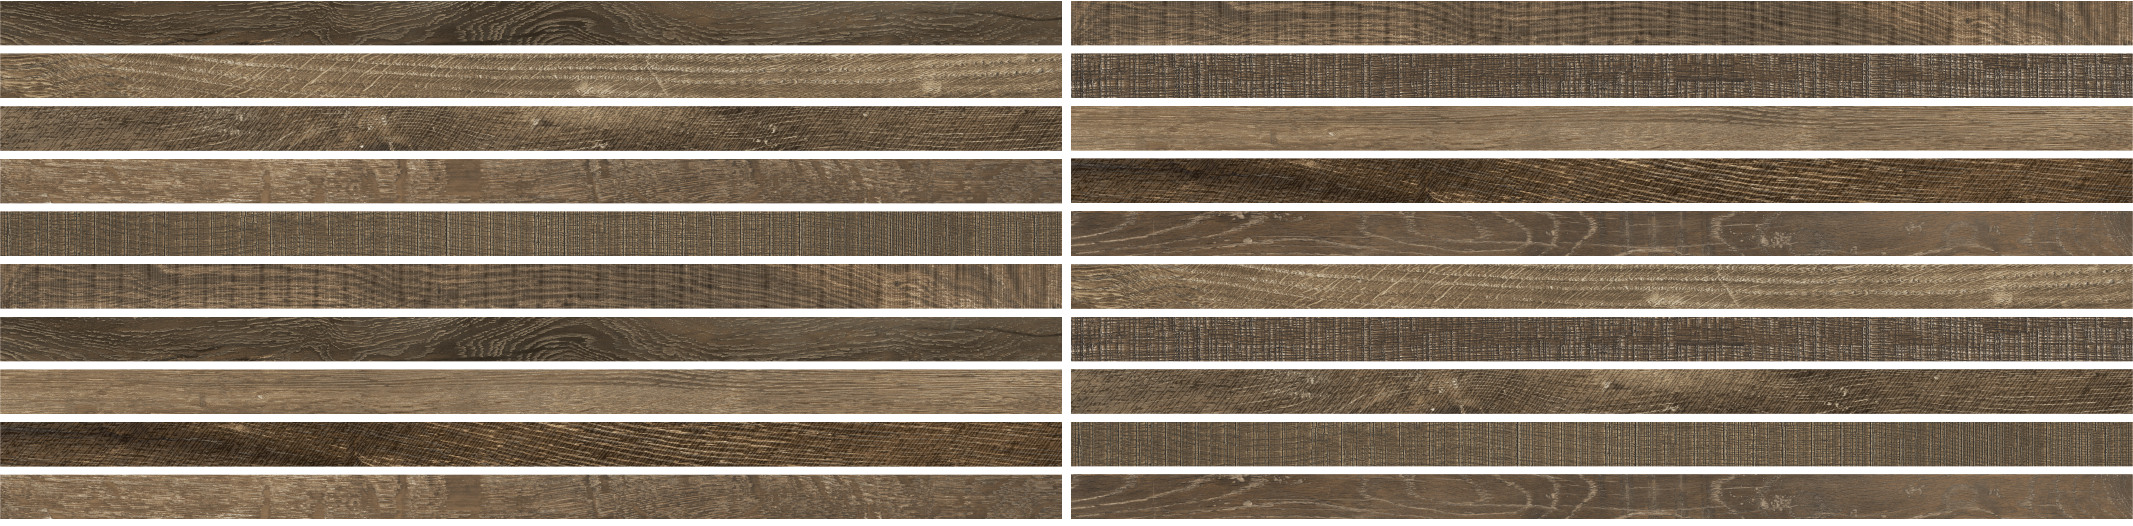 Opus 2x48 Chestnut Blend Wood Look Porcelain Tile - SAMPLES